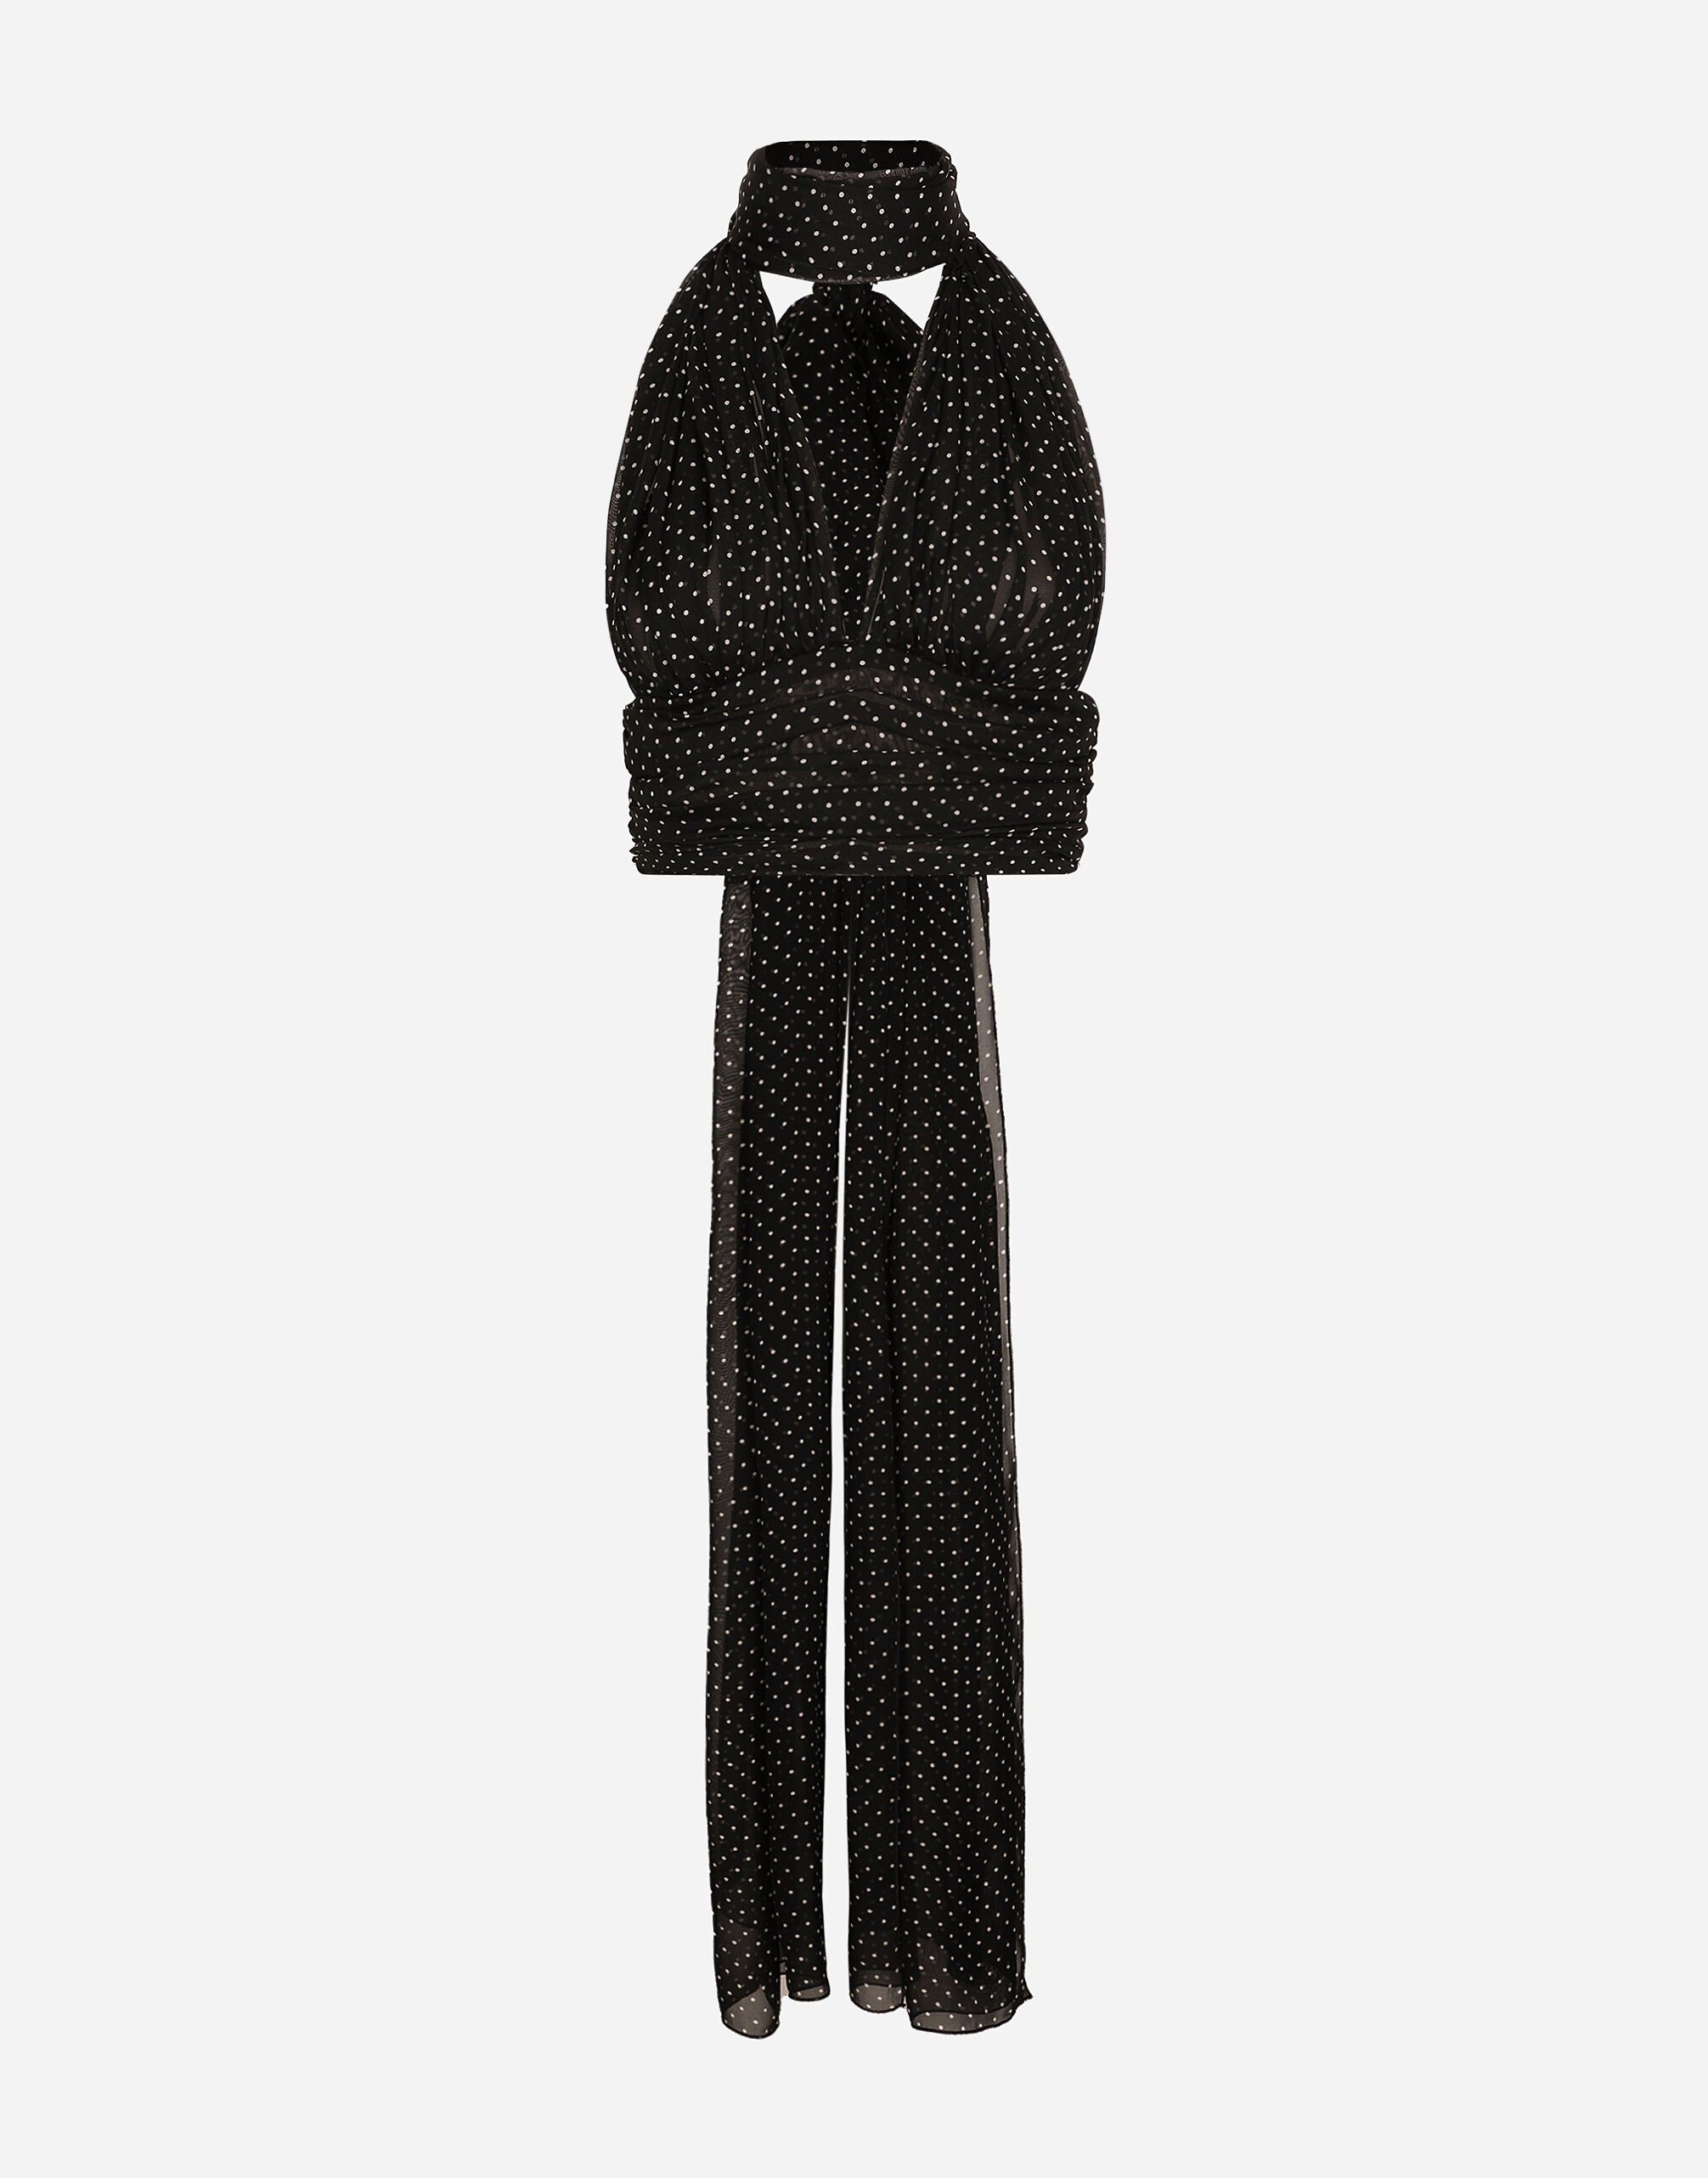 Dolce&Gabbana Top aus Chiffon Punkteprint mit Schluppenbändern Schwarz F6DDXTGDB0R